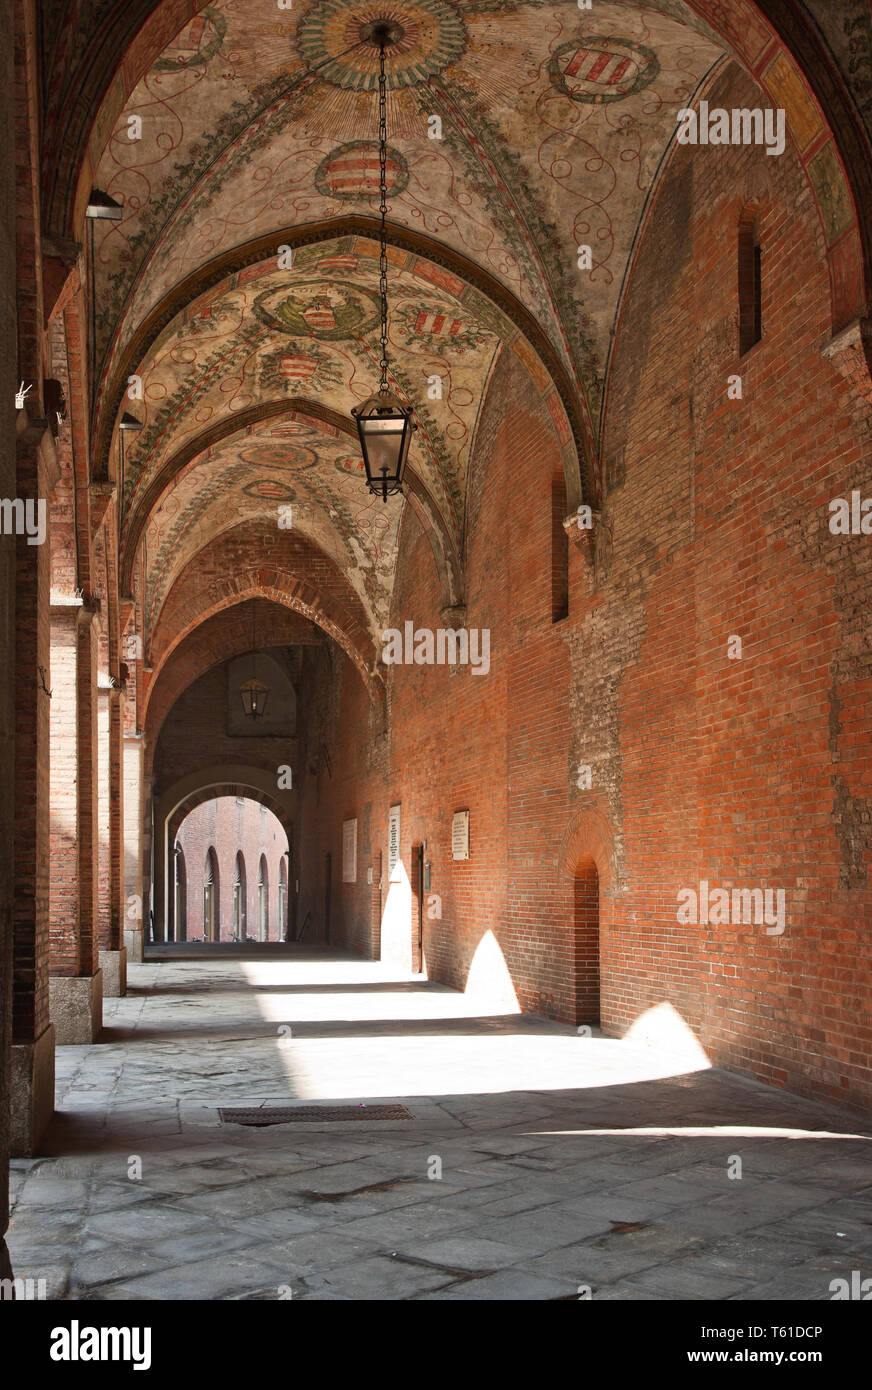 Cremona: portico interno del Palazzo del Comune.  [ENG]   Cremona: internal porch of the Palazzo del Comune (Town Hall Palace). Stock Photo